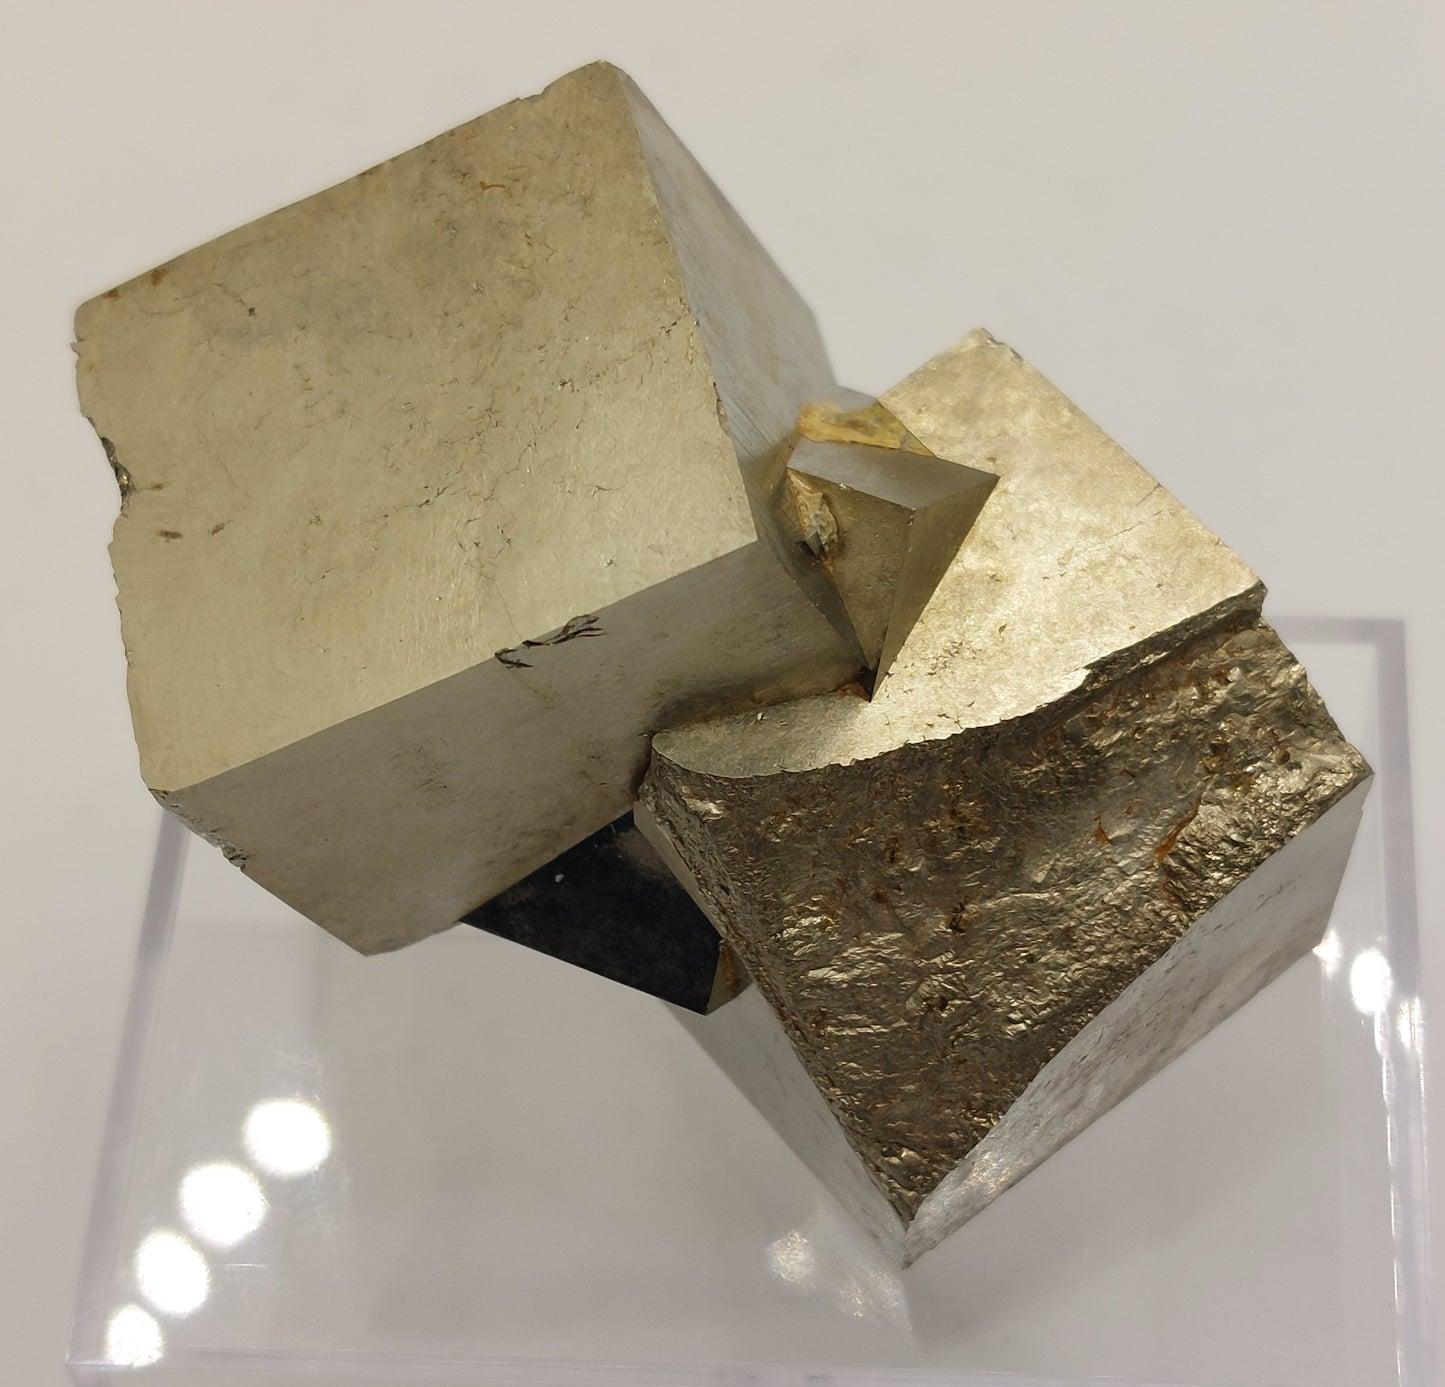 Pyrite specimen